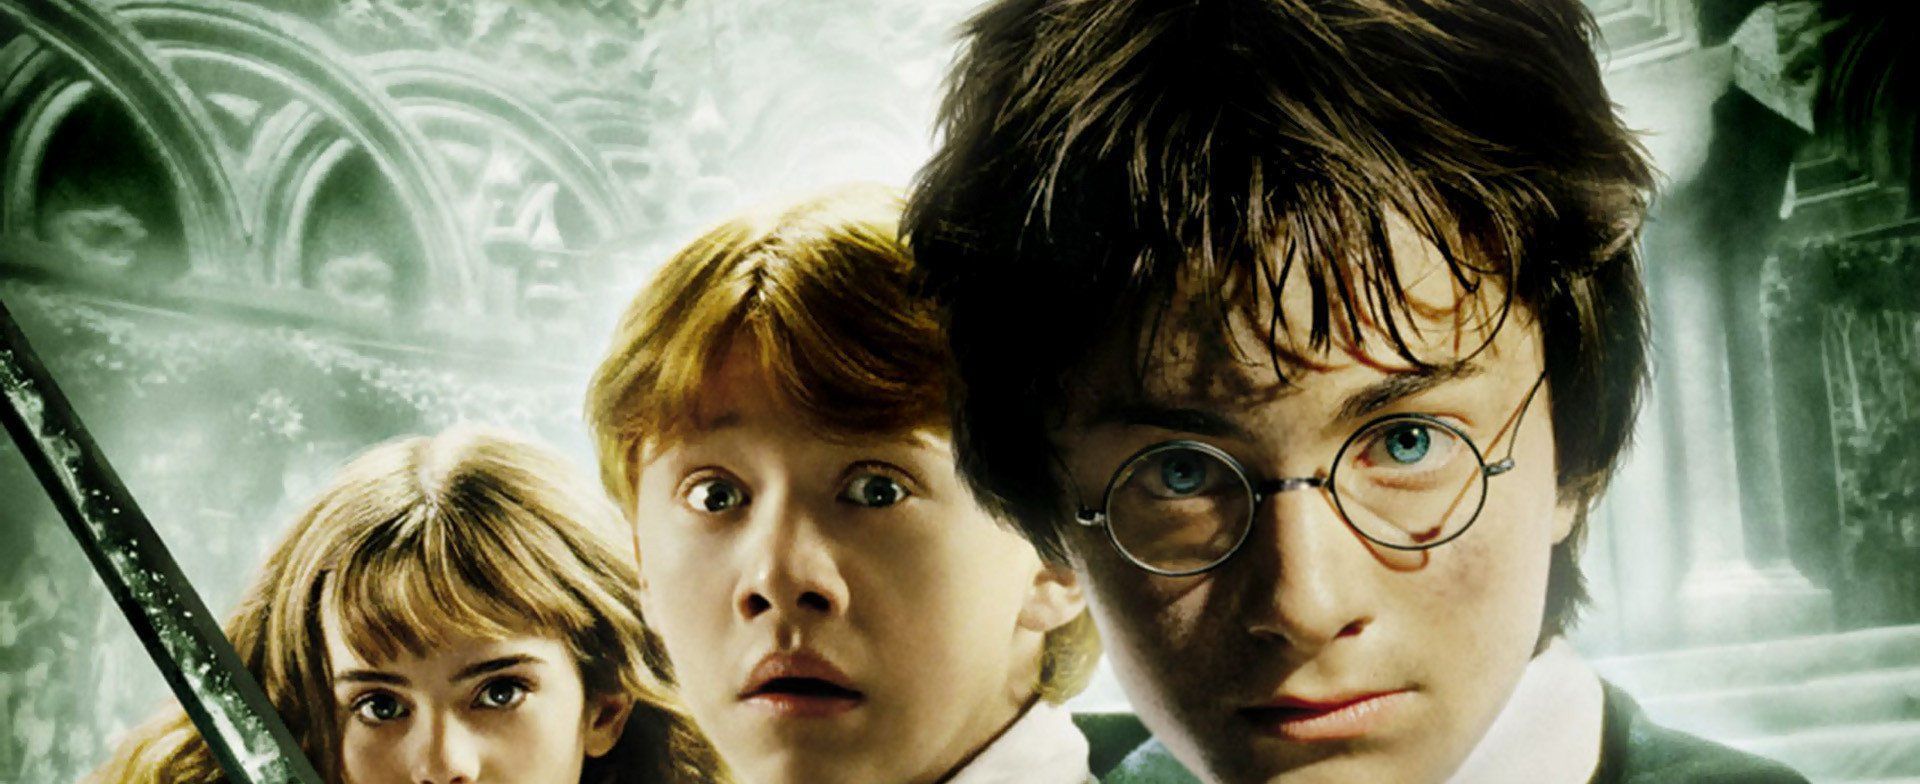 Harry Potter et la Chambre des Secrets streaming gratuit